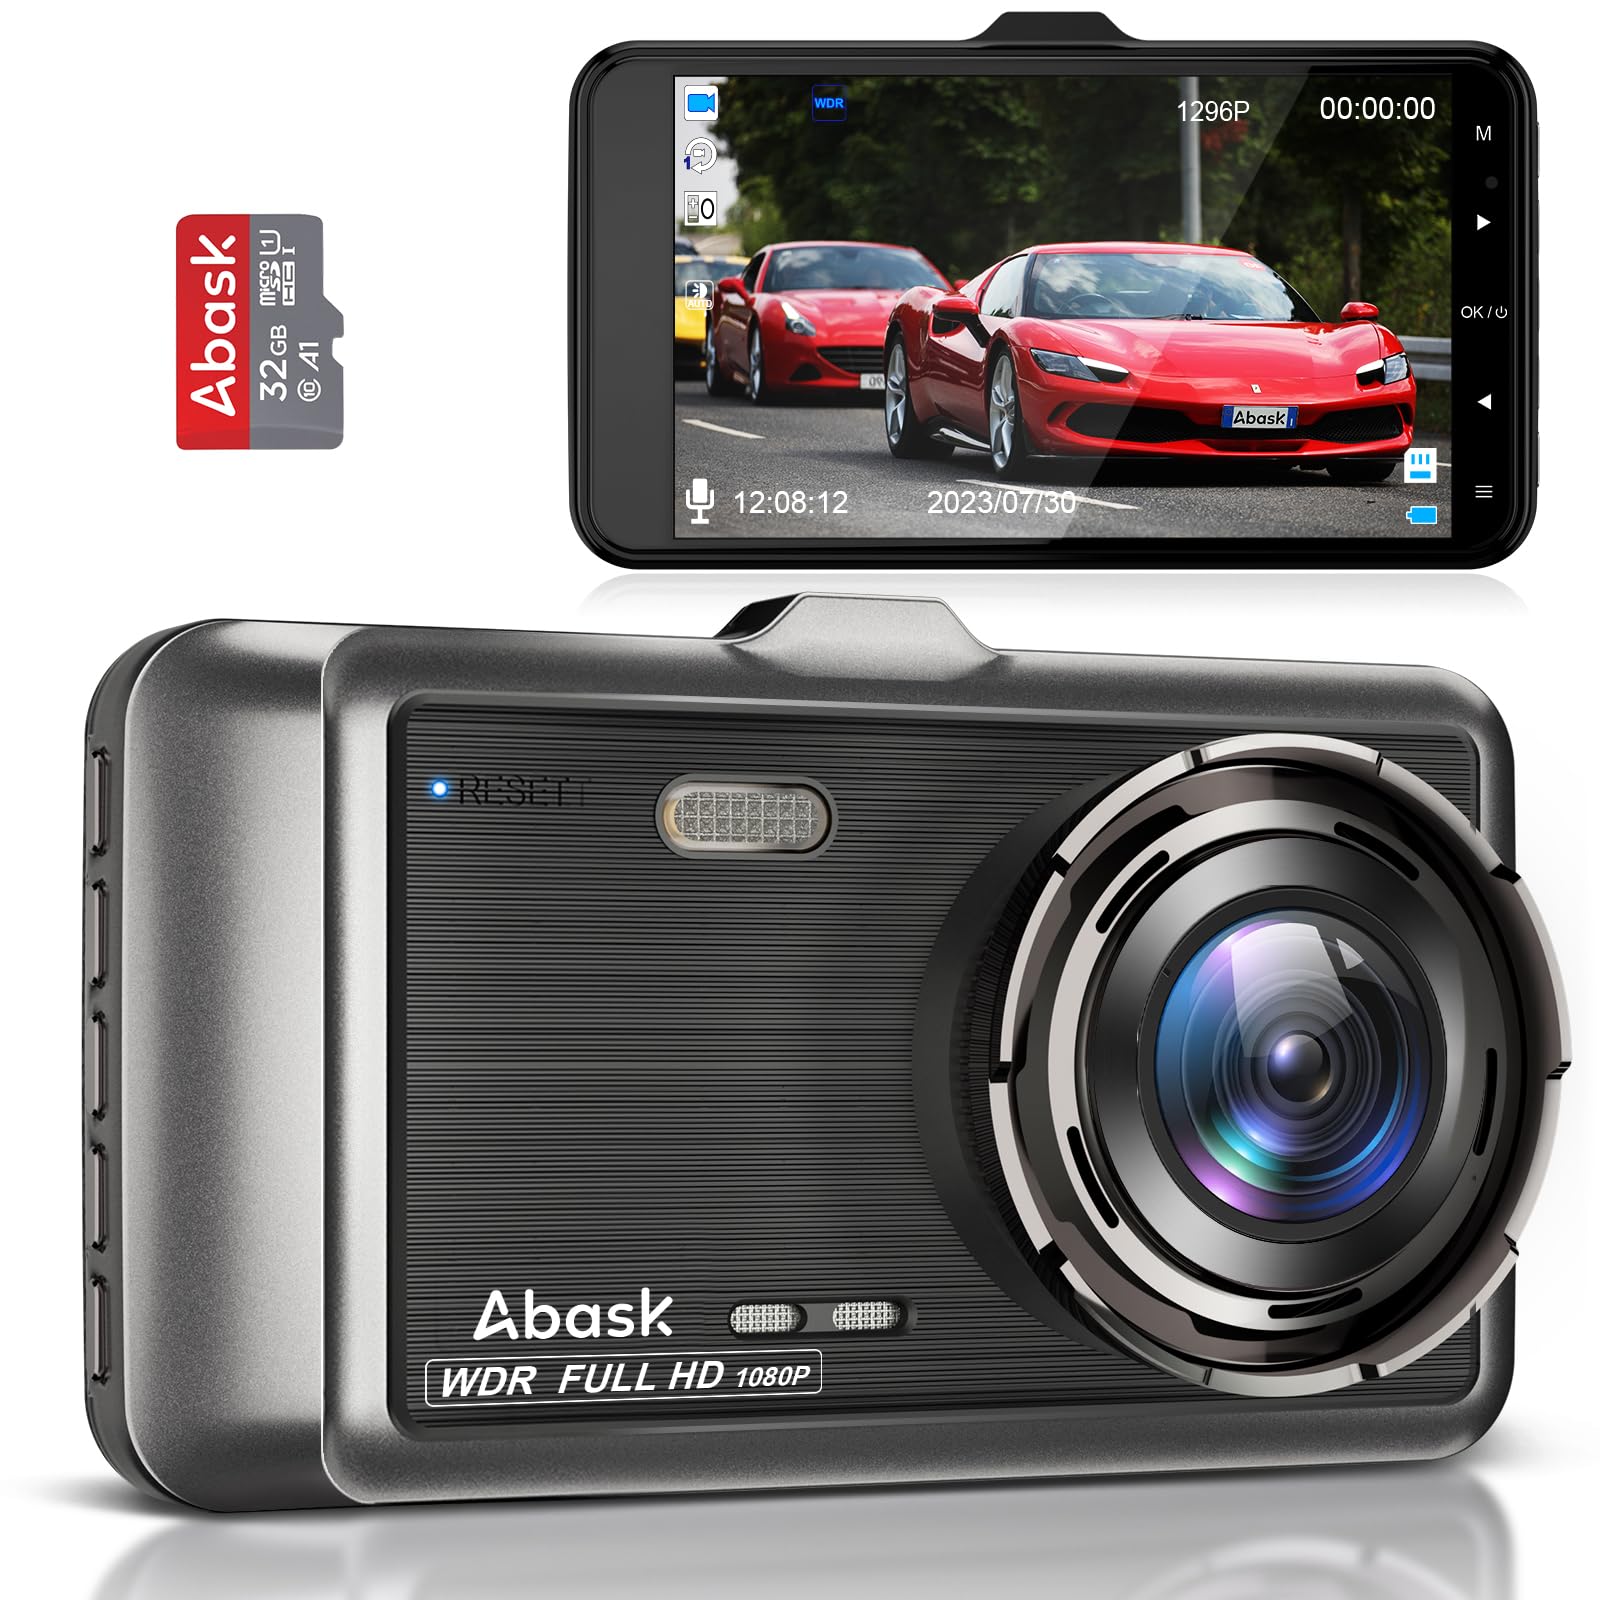 Abask Dashcam Auto Vorne Autokamera 1080P mit 32 GB SD-Karte, 4 Zoll Bildschirm, 170° Weitwinkelansicht, Nachtsicht, Parküberwachung, Rückfahrhilfe, Bewegungserkennung, G-Sensor, Loop-Aufnahm, WDR